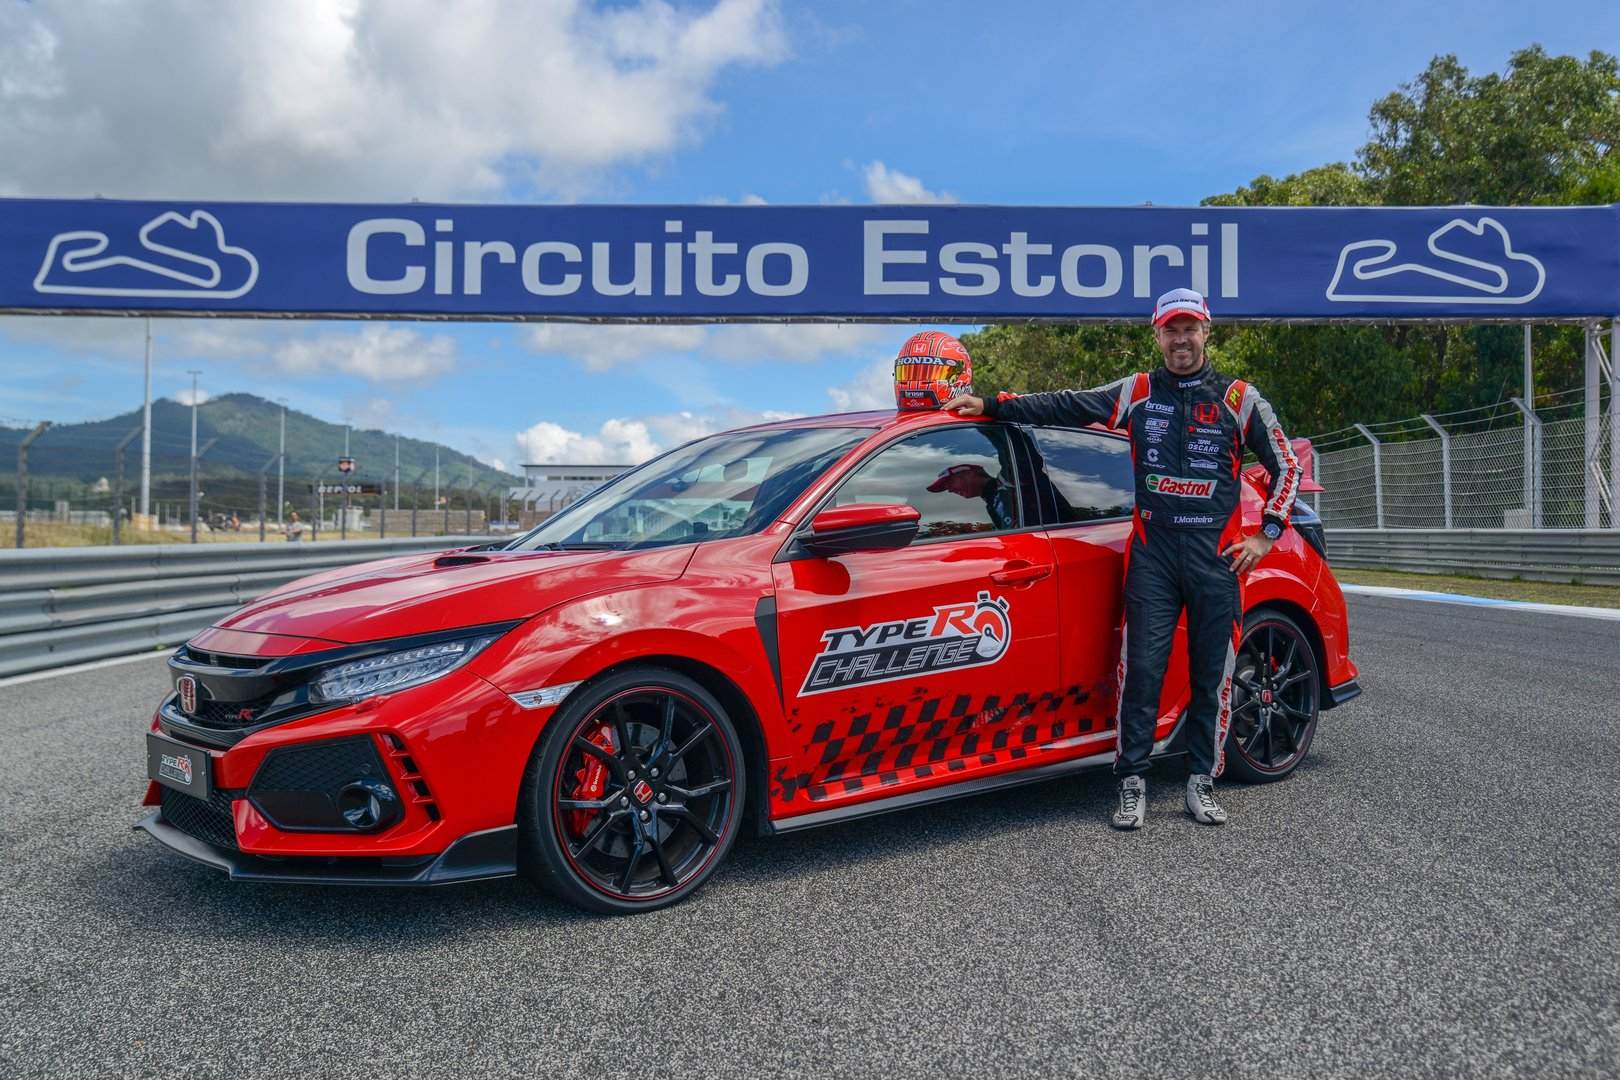 Nuevo récord para el Honda Civic Type R sobre el entramado de Estoril